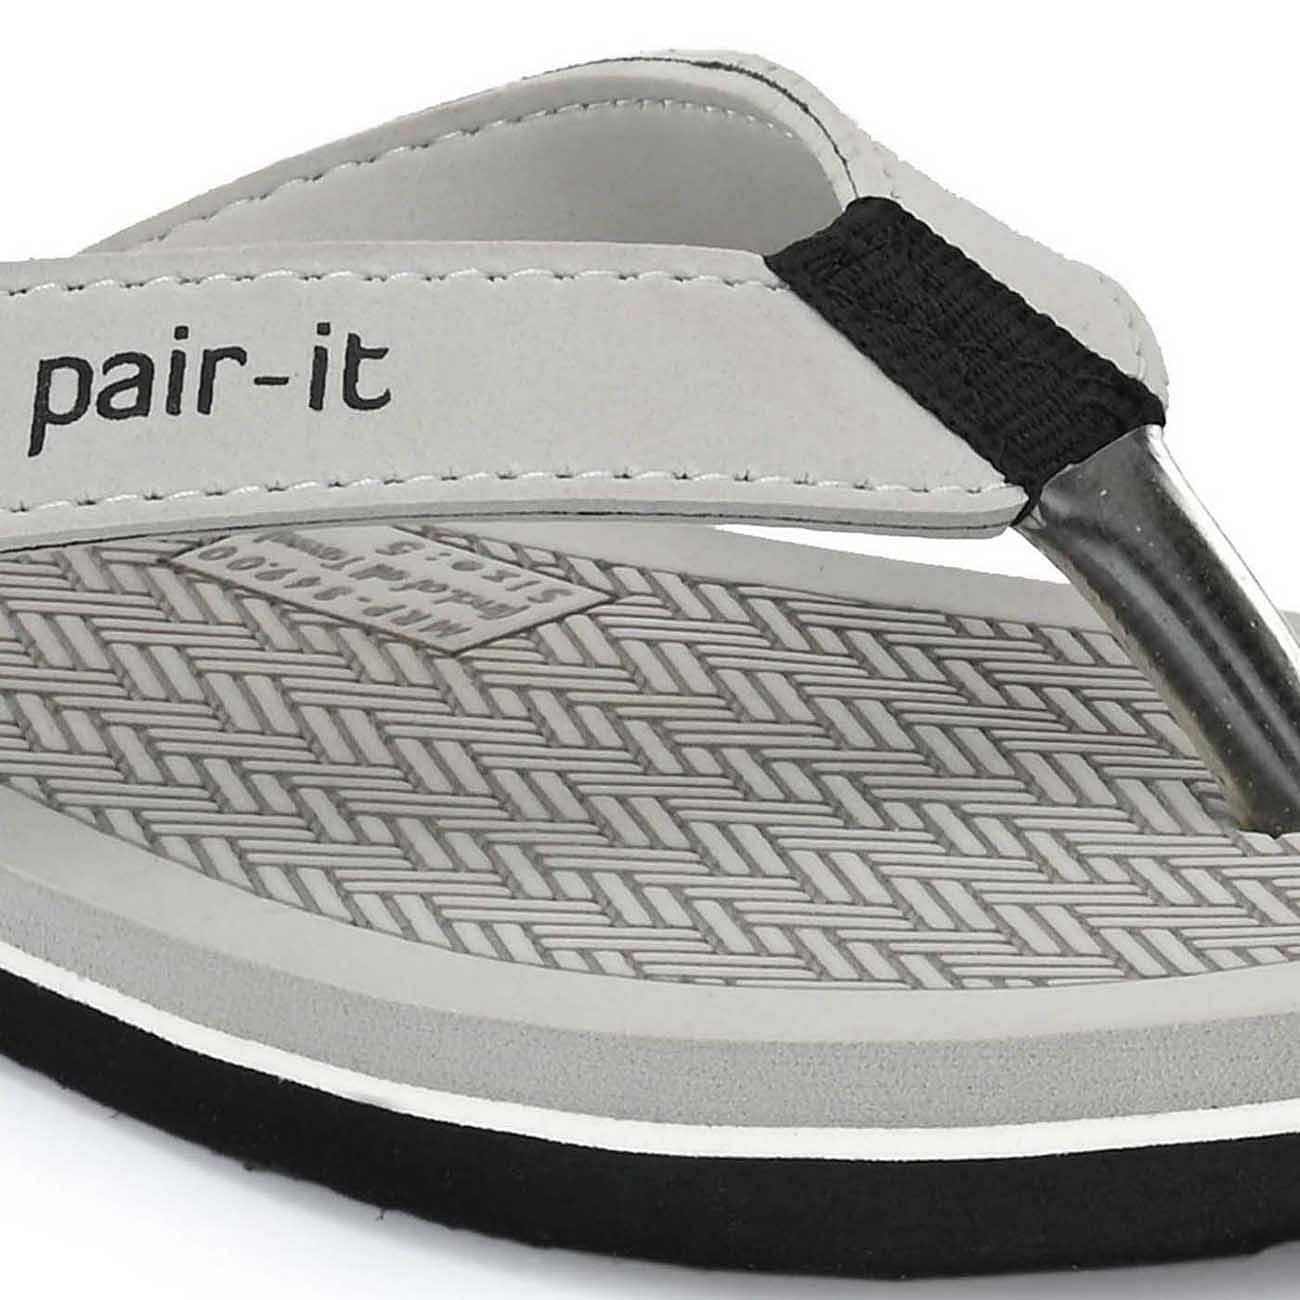 Pair-it Ladies EVA Flip-Flops - R4-ELEGANCE002 - Grey